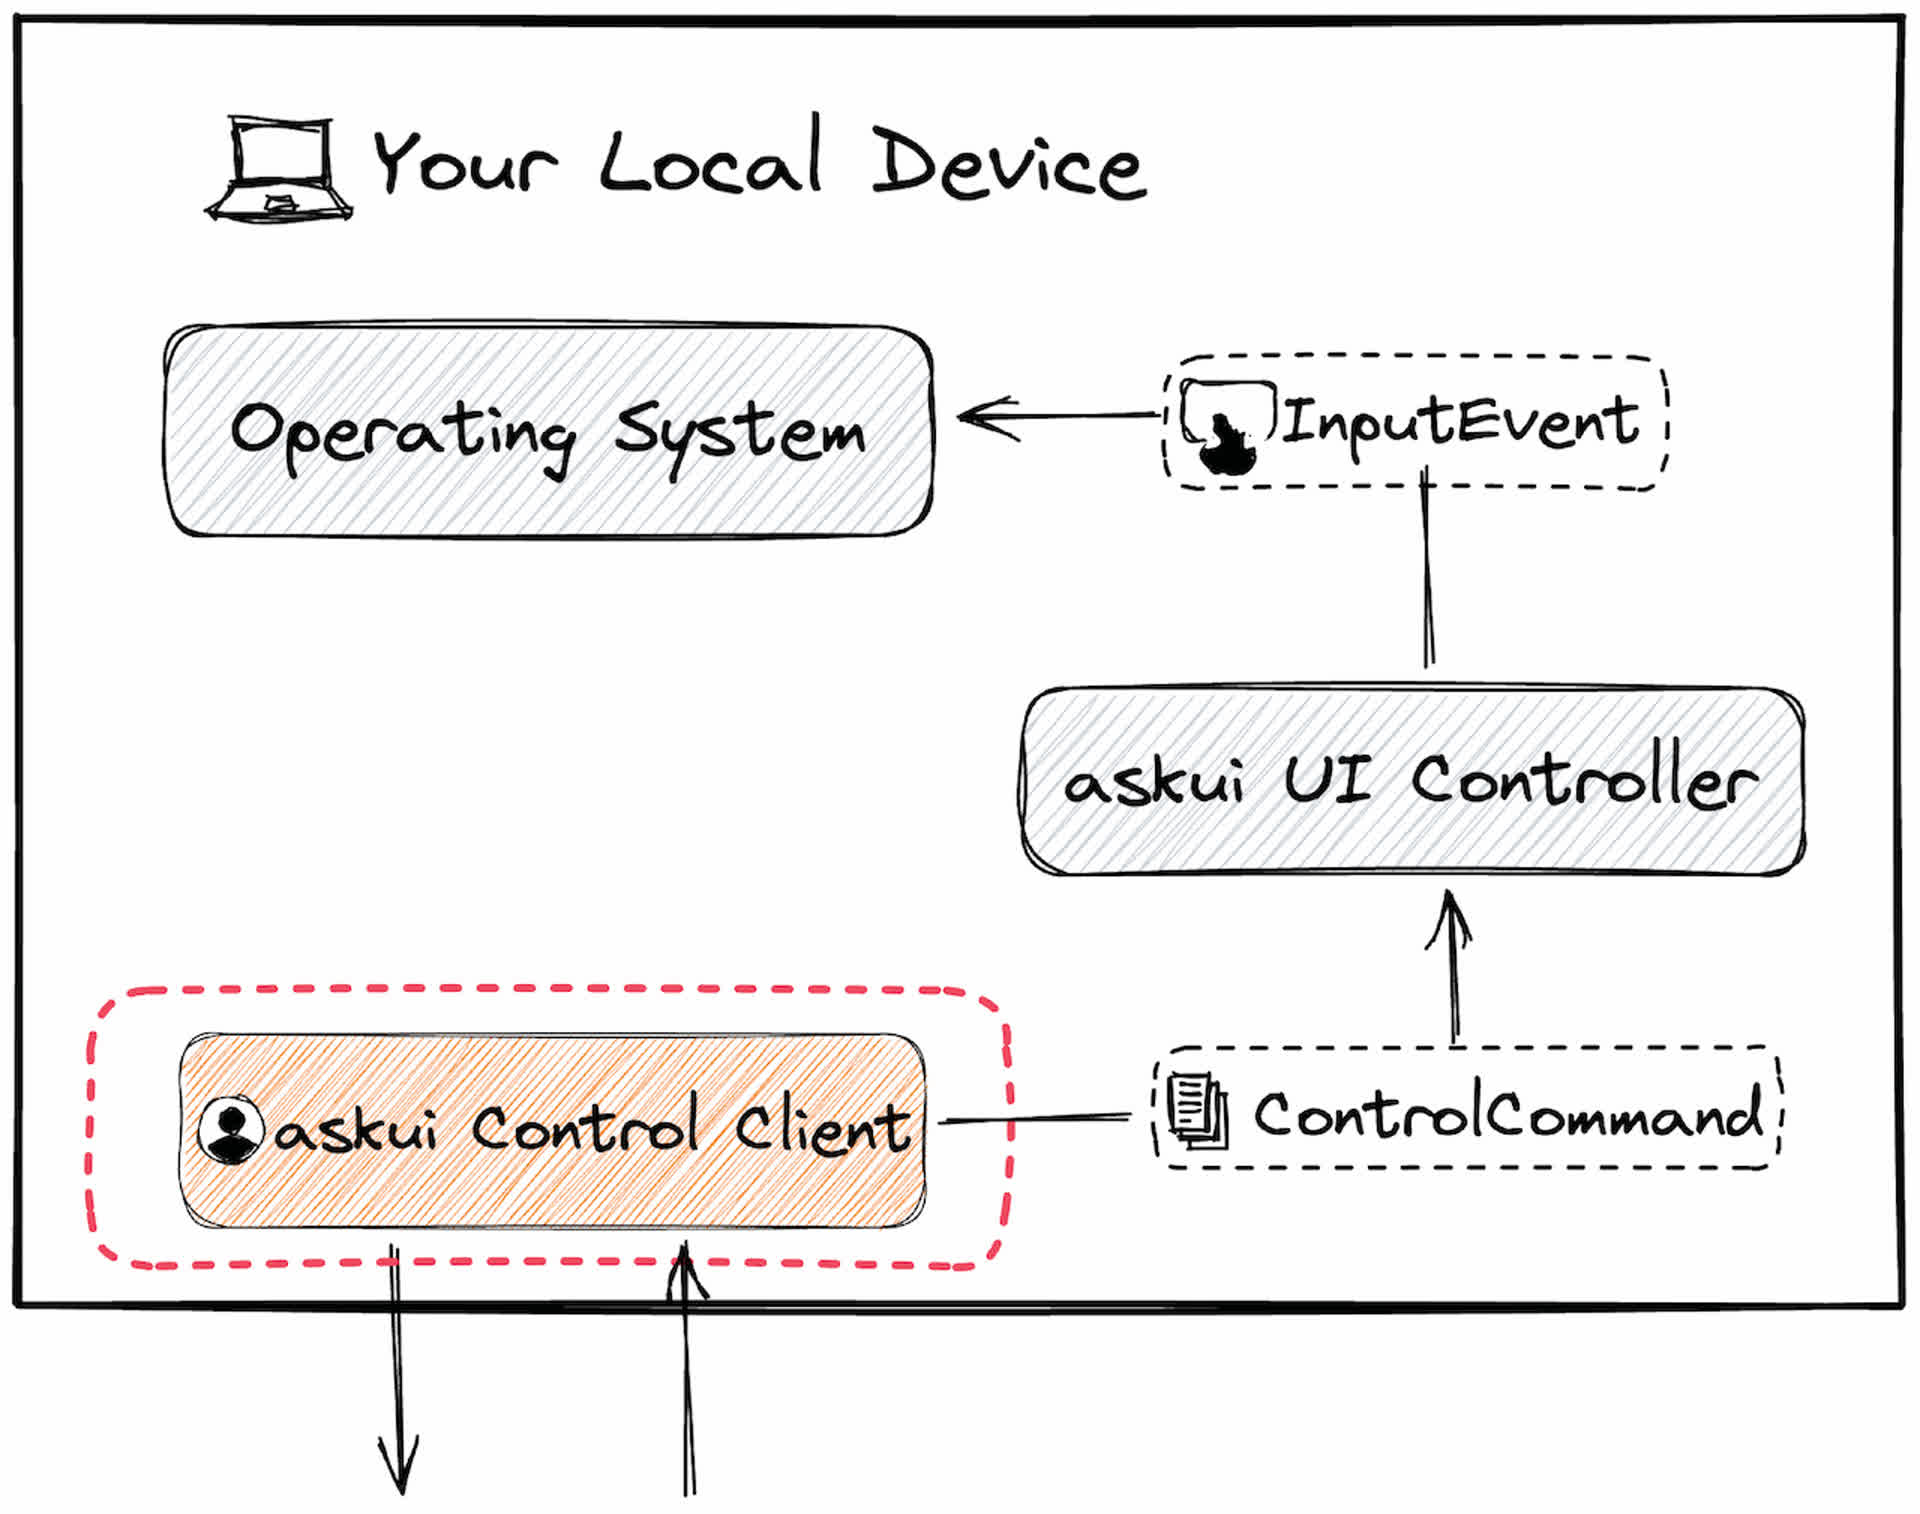 control-client